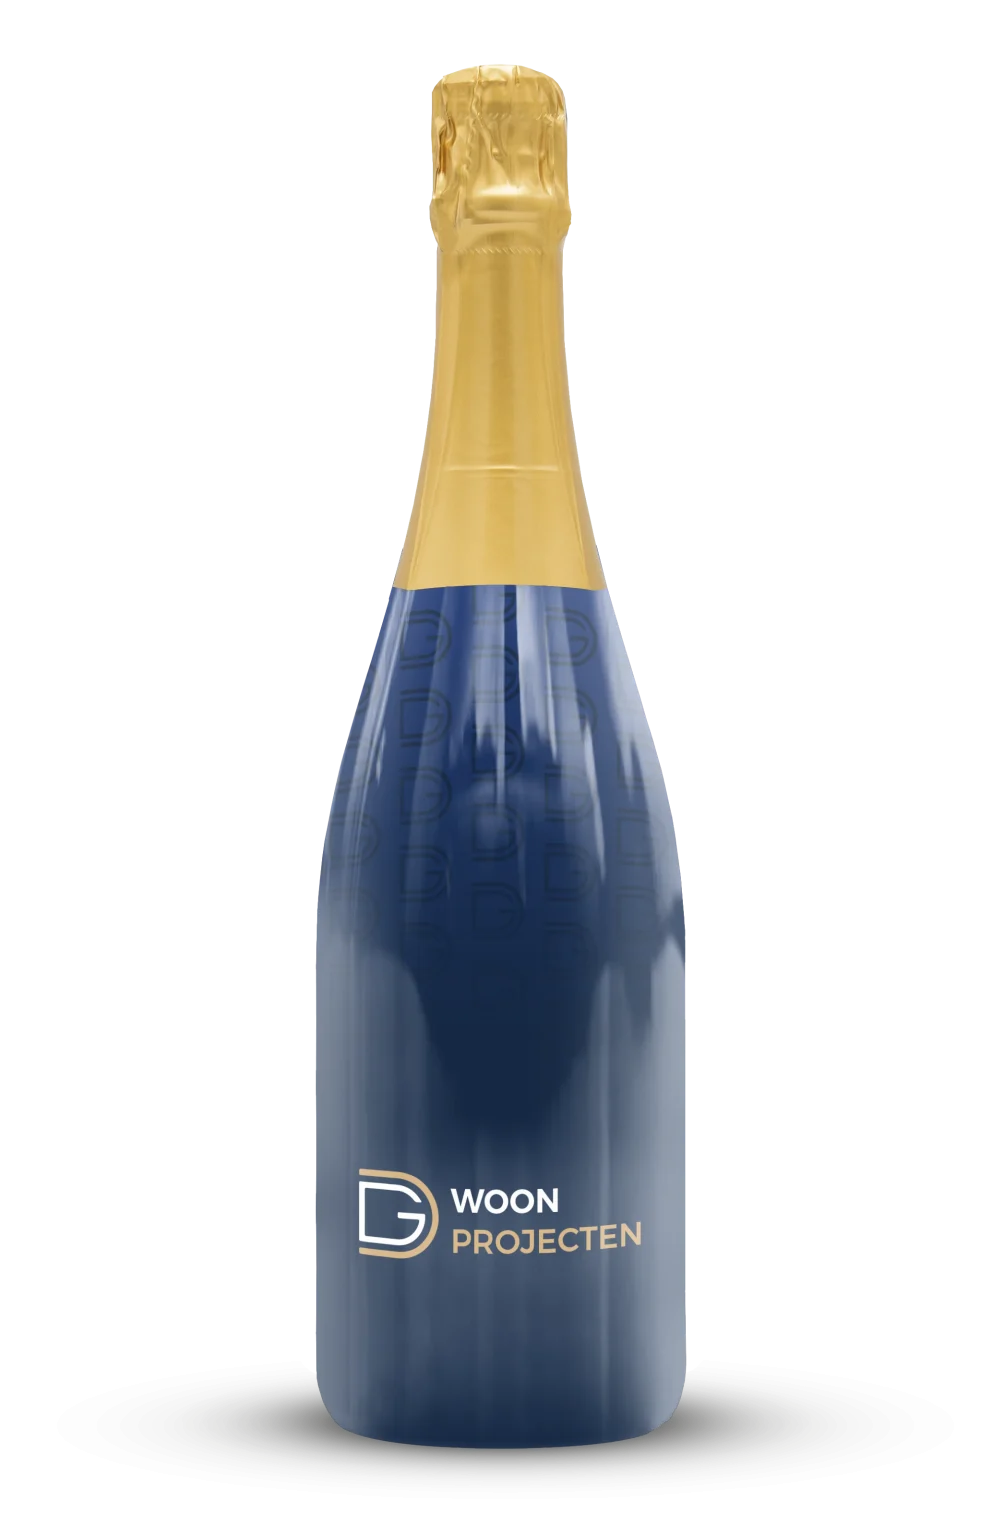 Bedrukte fles cava van Woon Projecten